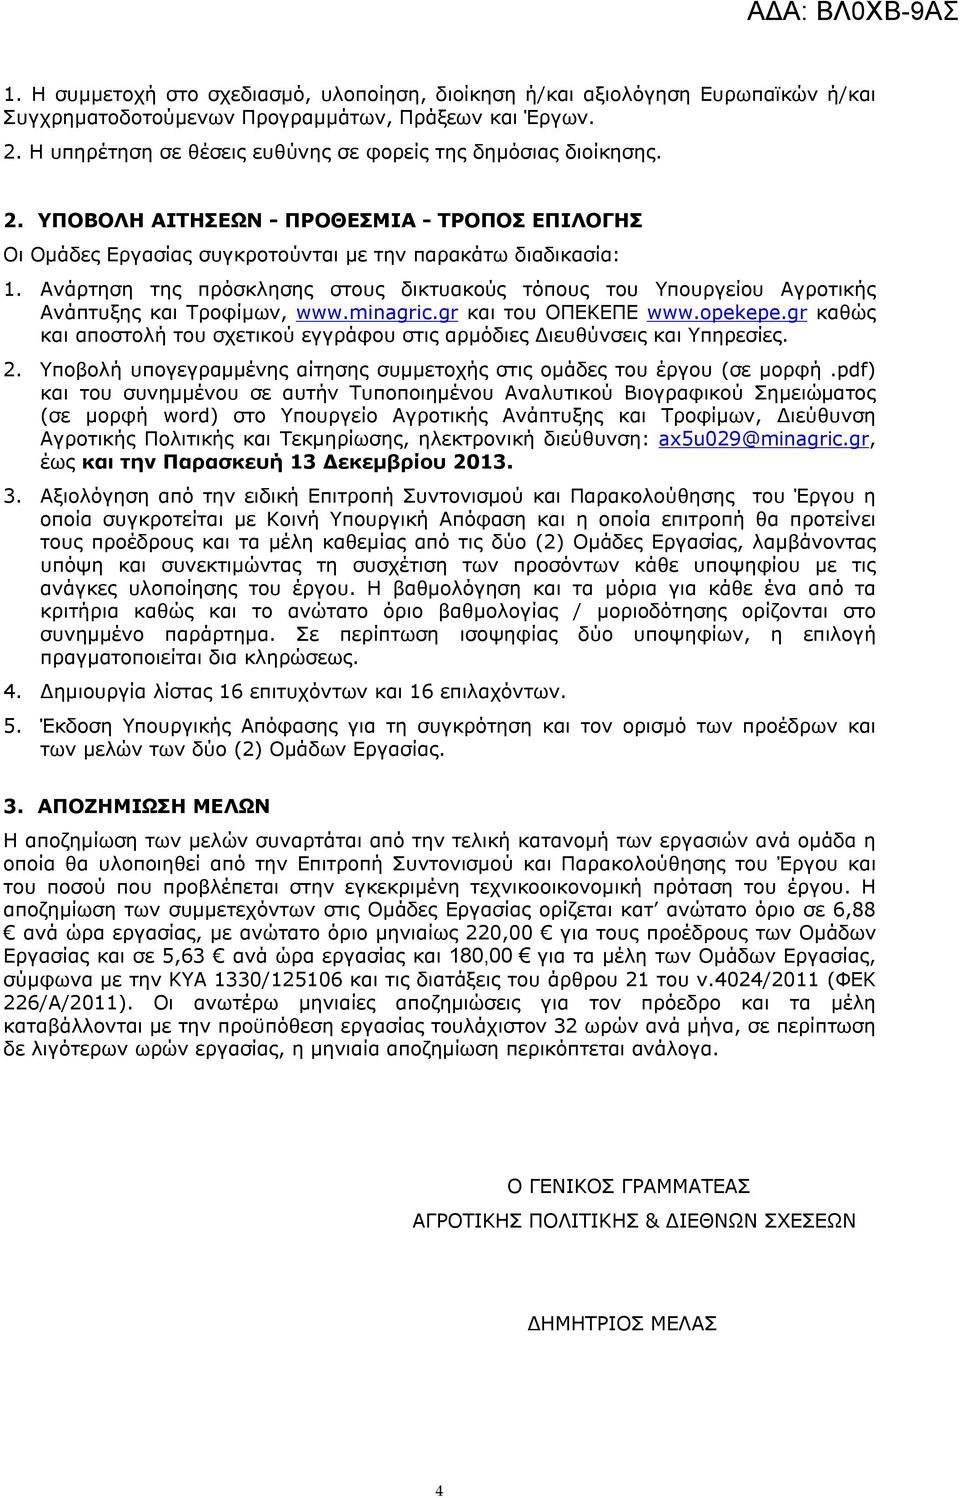 Ανάρτηση της πρόσκλησης στους δικτυακούς τόπους του Υπουργείου Αγροτικής Ανάπτυξης και Τροφίμων, www.minagric.gr και του ΟΠΕΚΕΠΕ www.opekepe.